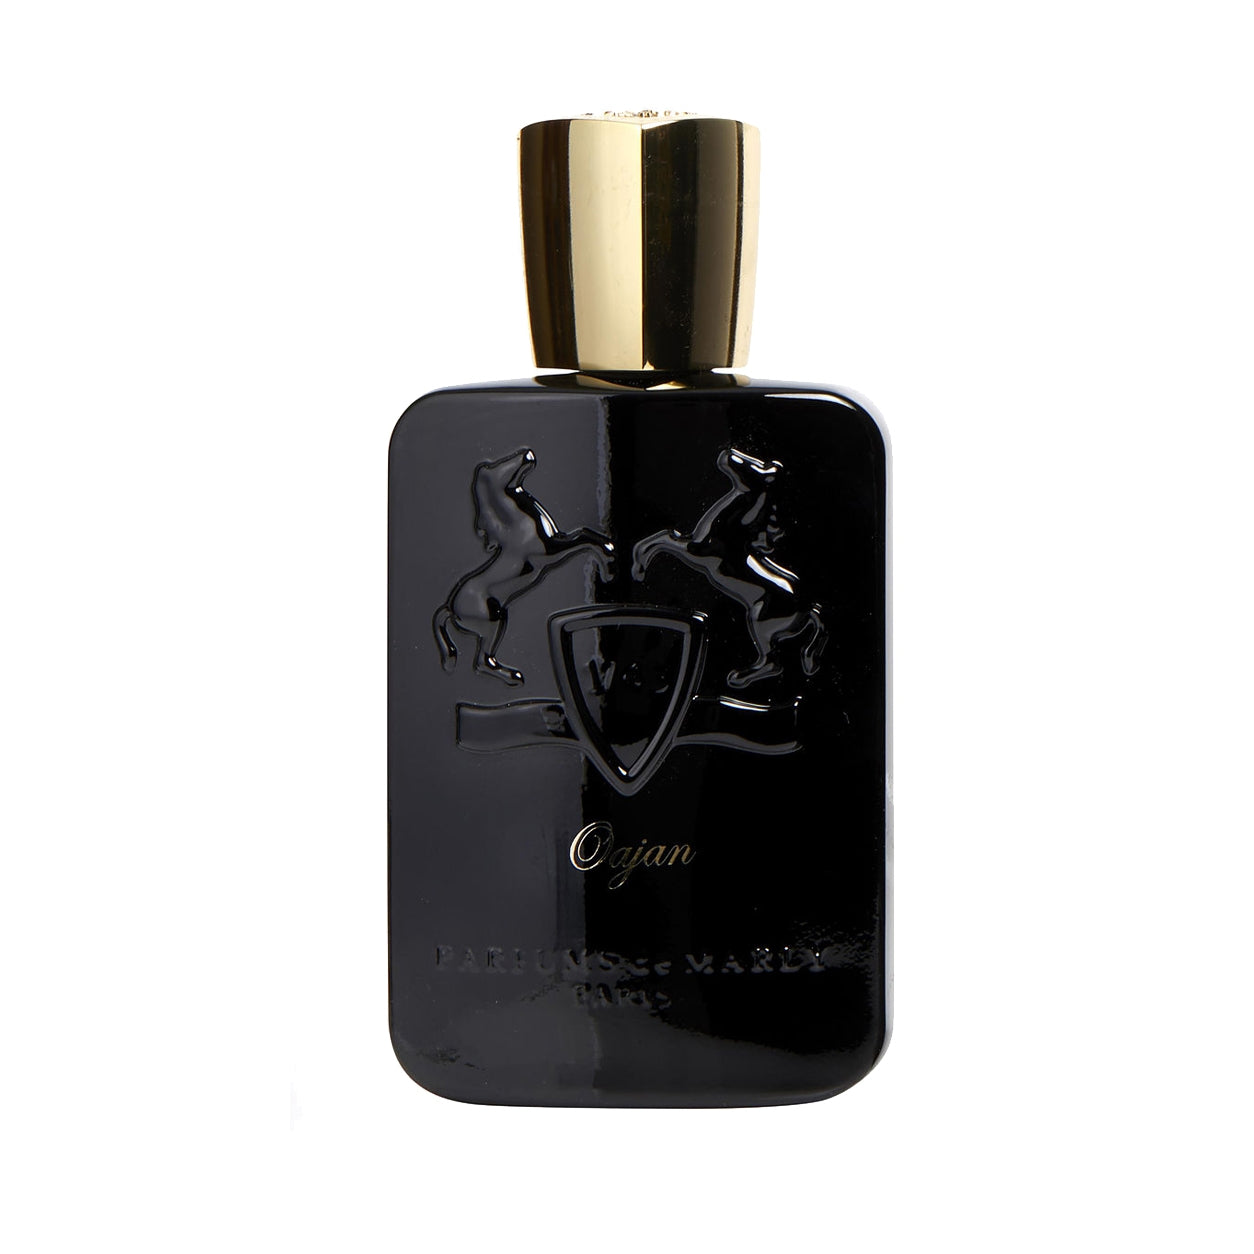 Parfums de Eau Parfum for Men – DecantX Perfume & Cologne Decant Fragrance